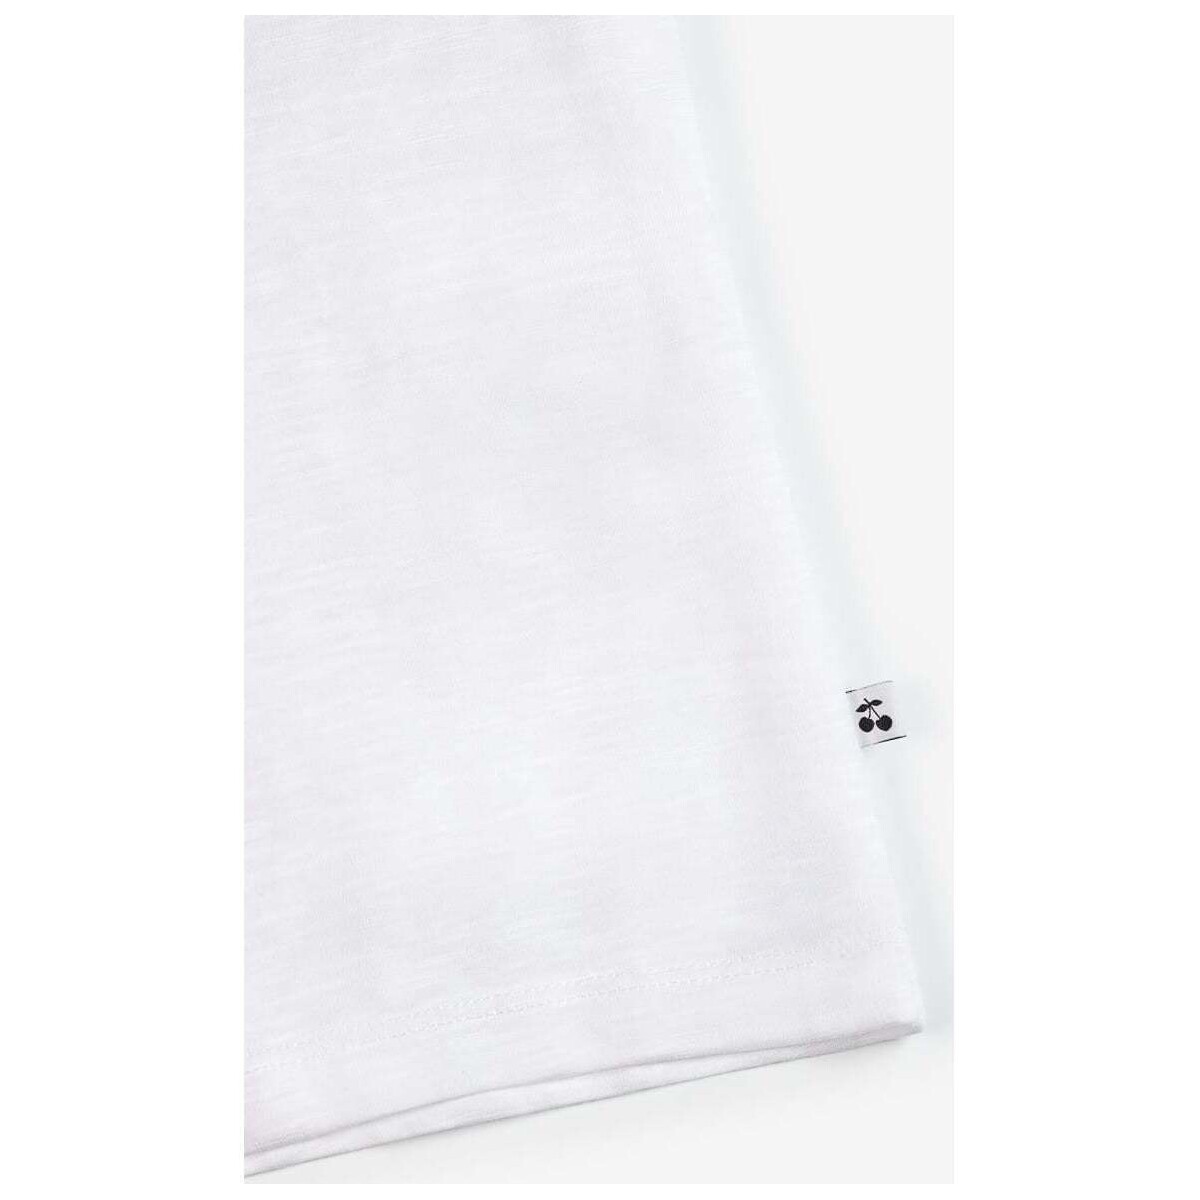 Le Temps des Cerises Blanc T-shirt isaakgi blanc imprimé nOGYnJDD